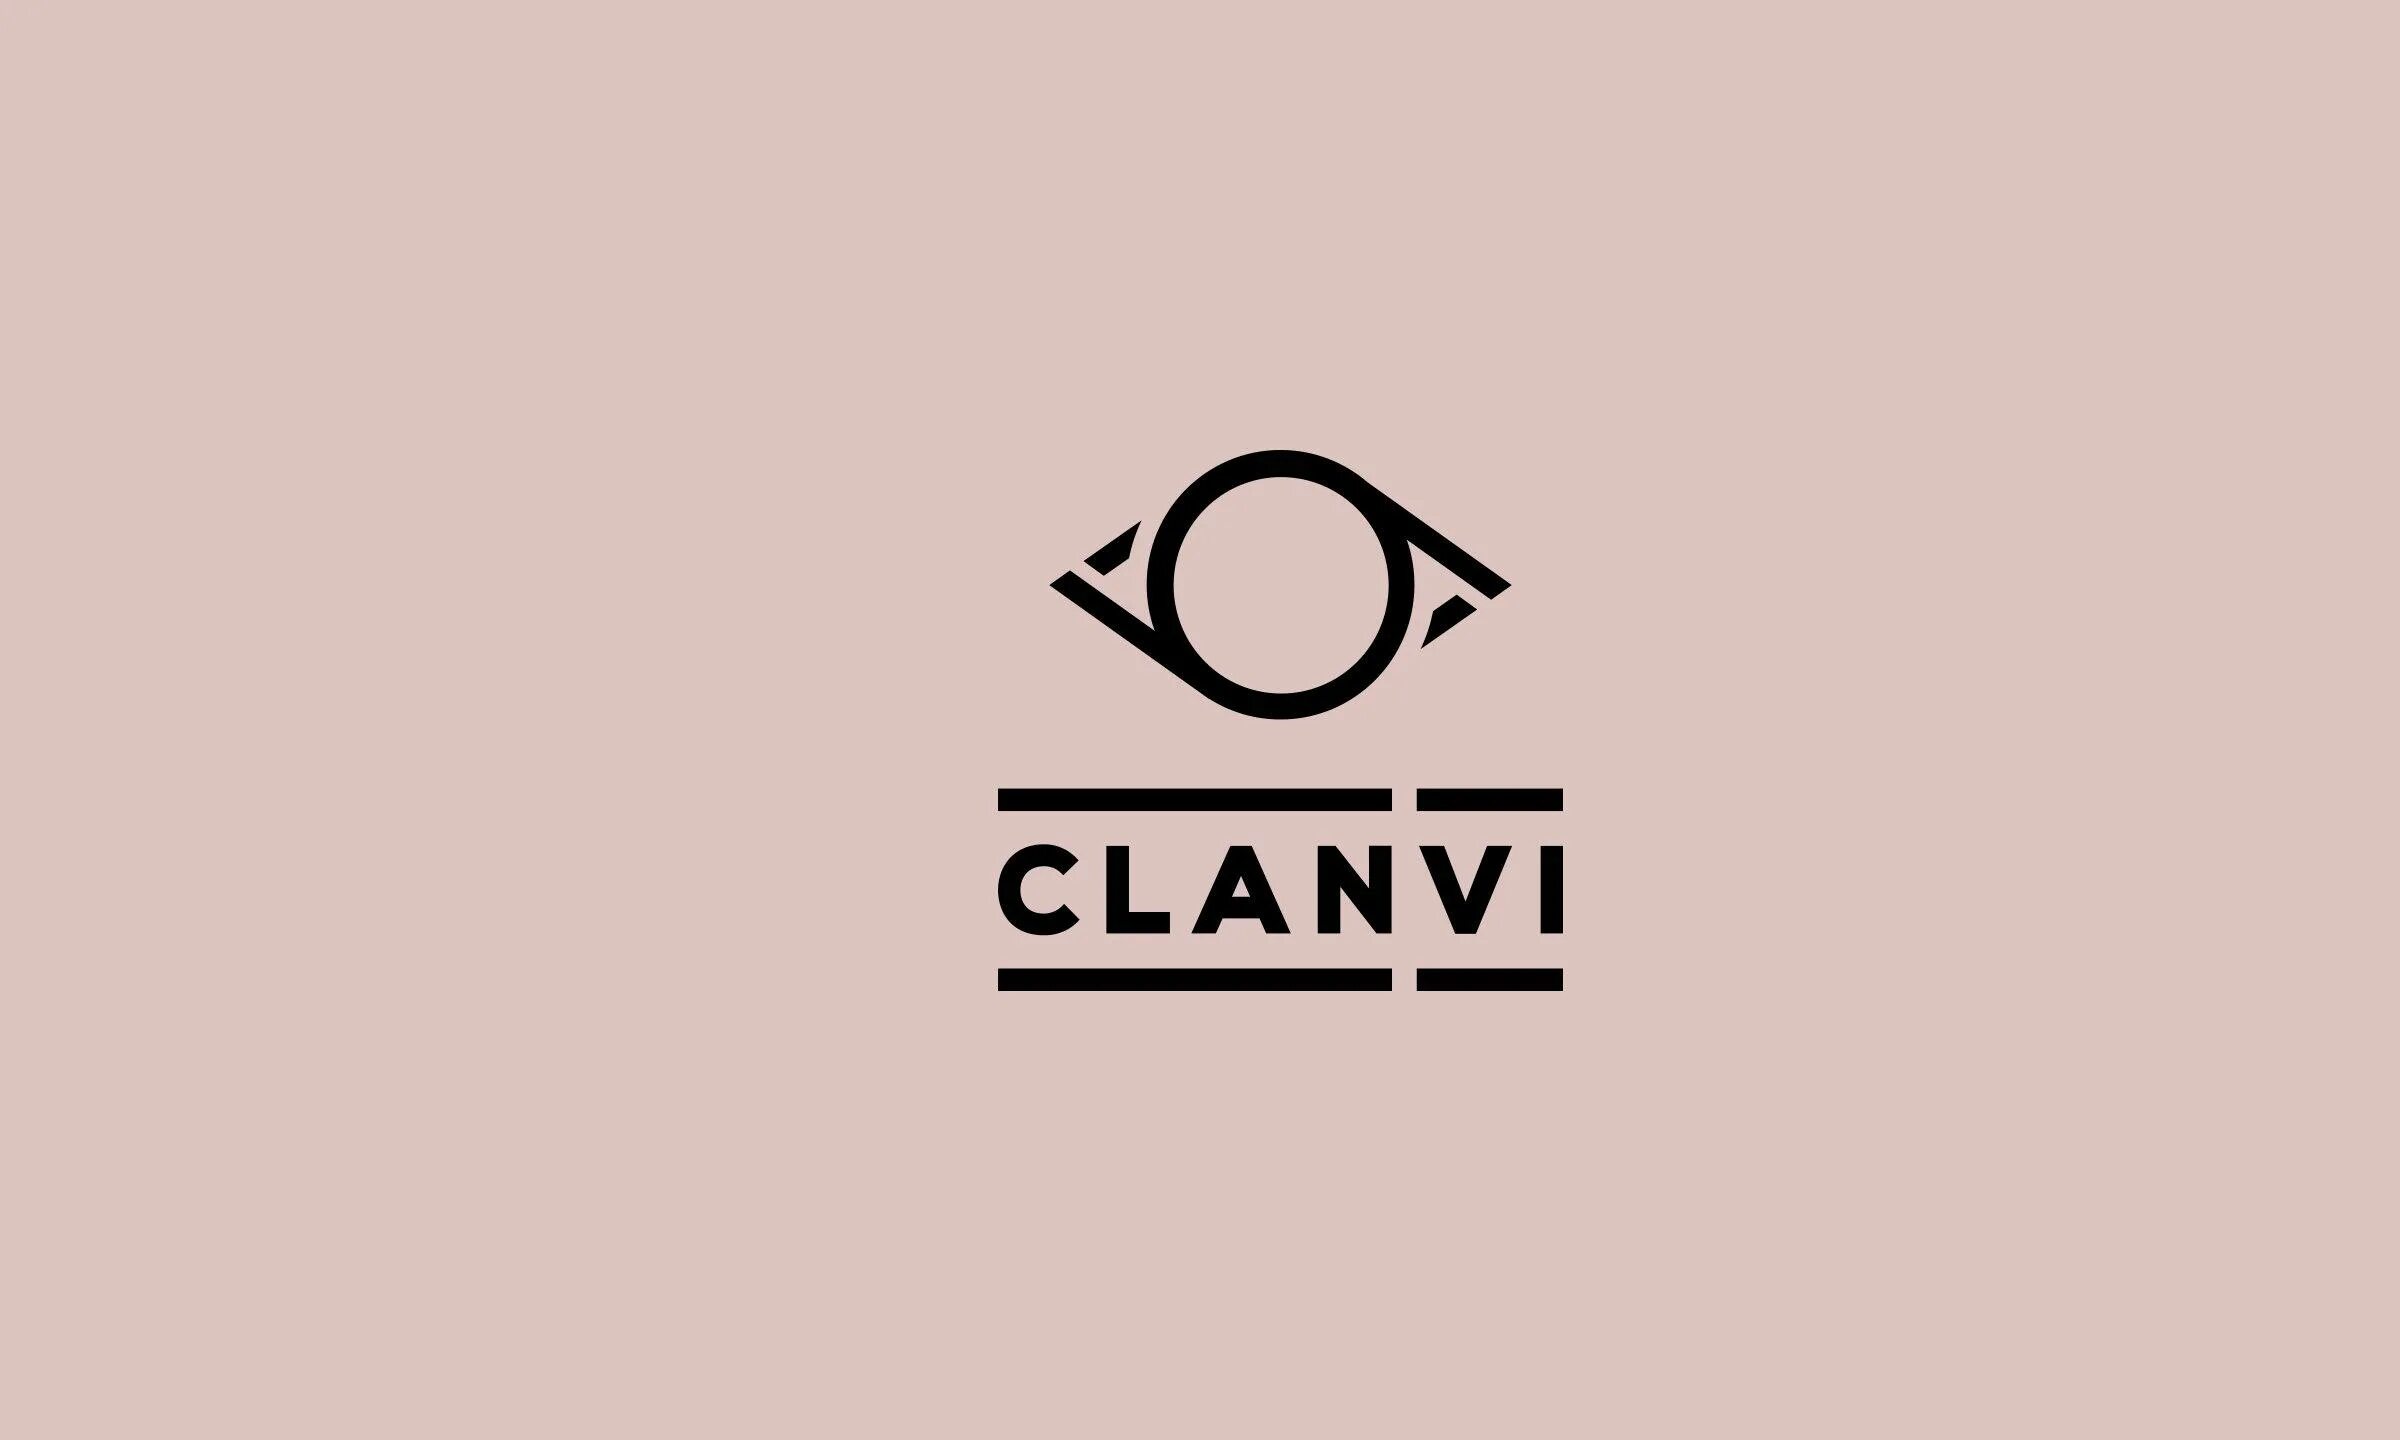 Clan vi. Clan 6 магазин. Clan vi одежда. Бренд clanvi.